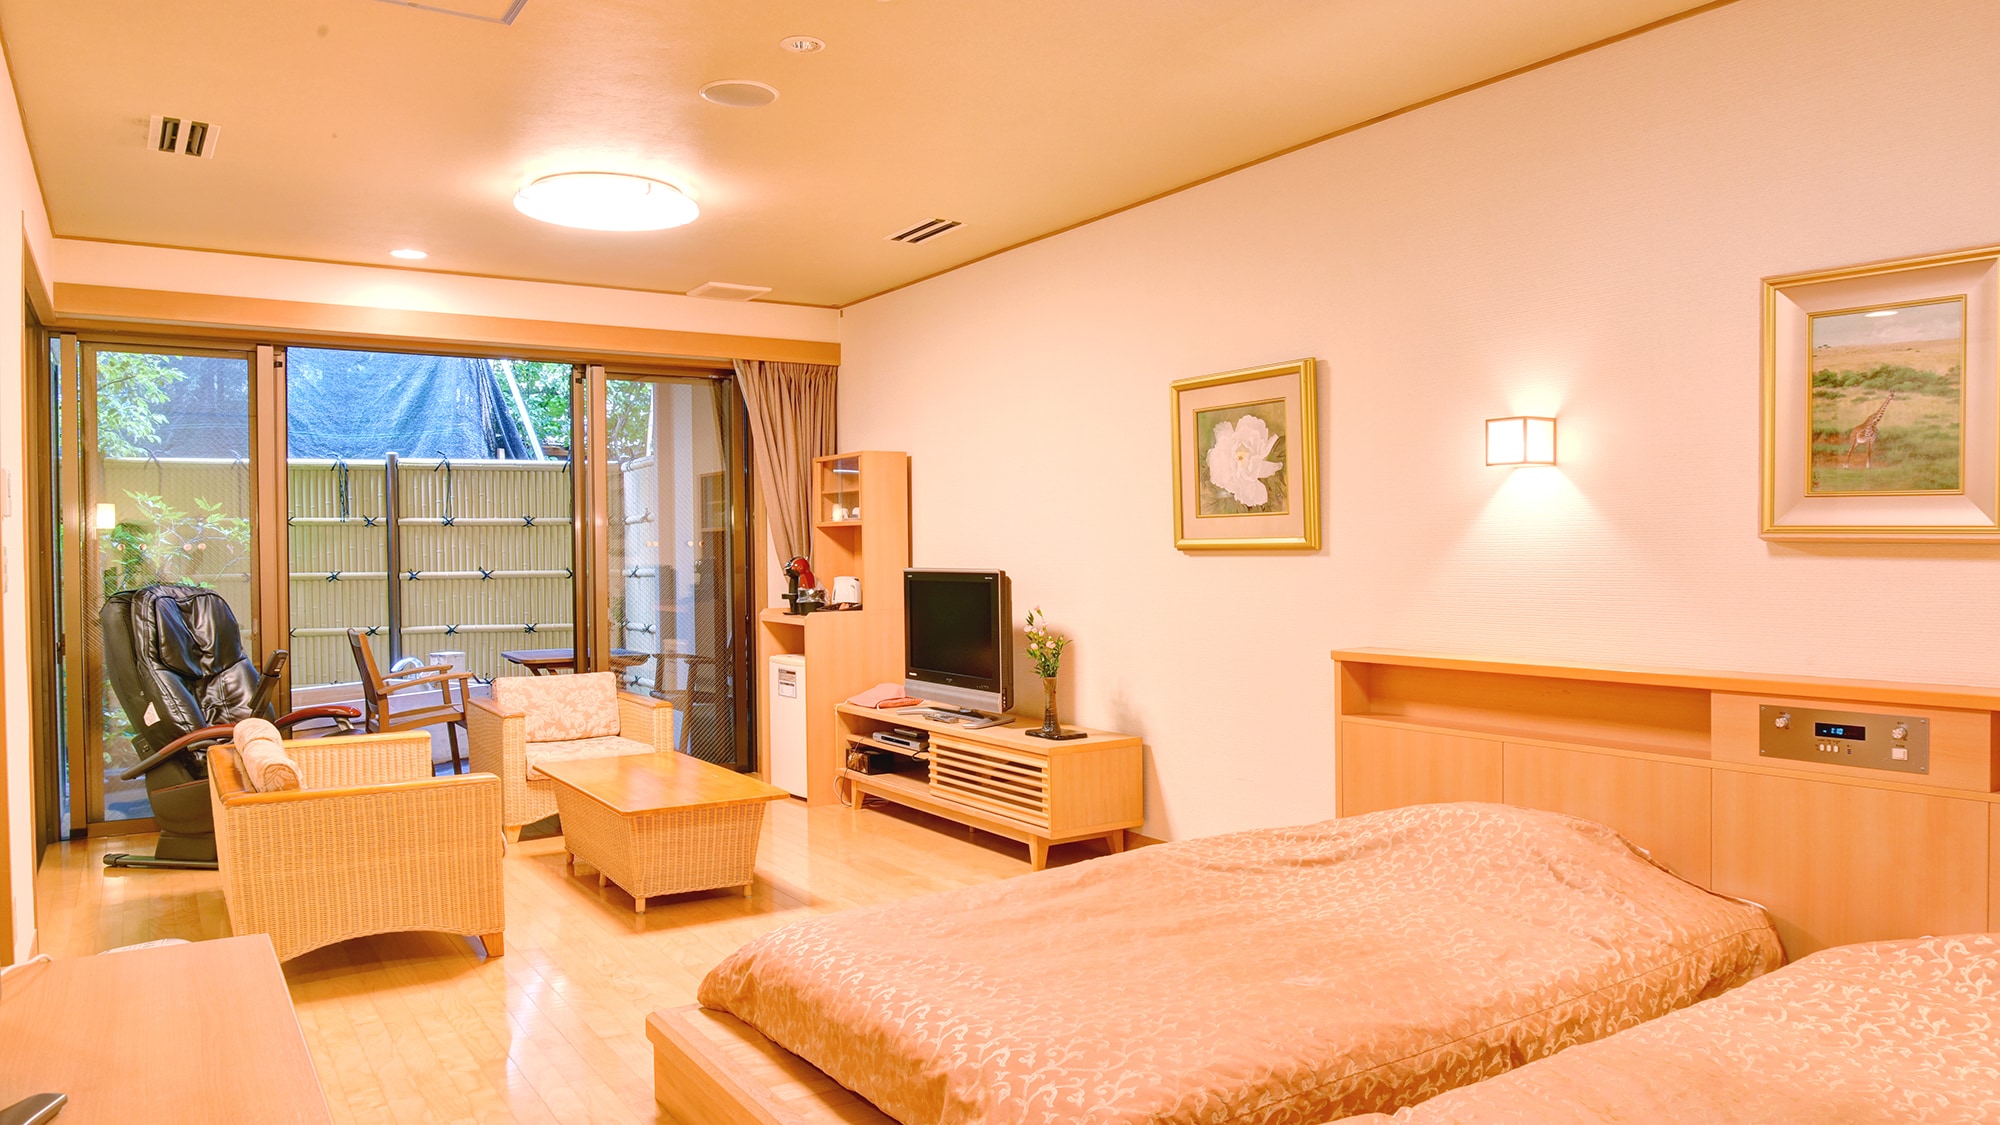 155 ห้องพักสไตล์ญี่ปุ่นสมัยใหม่